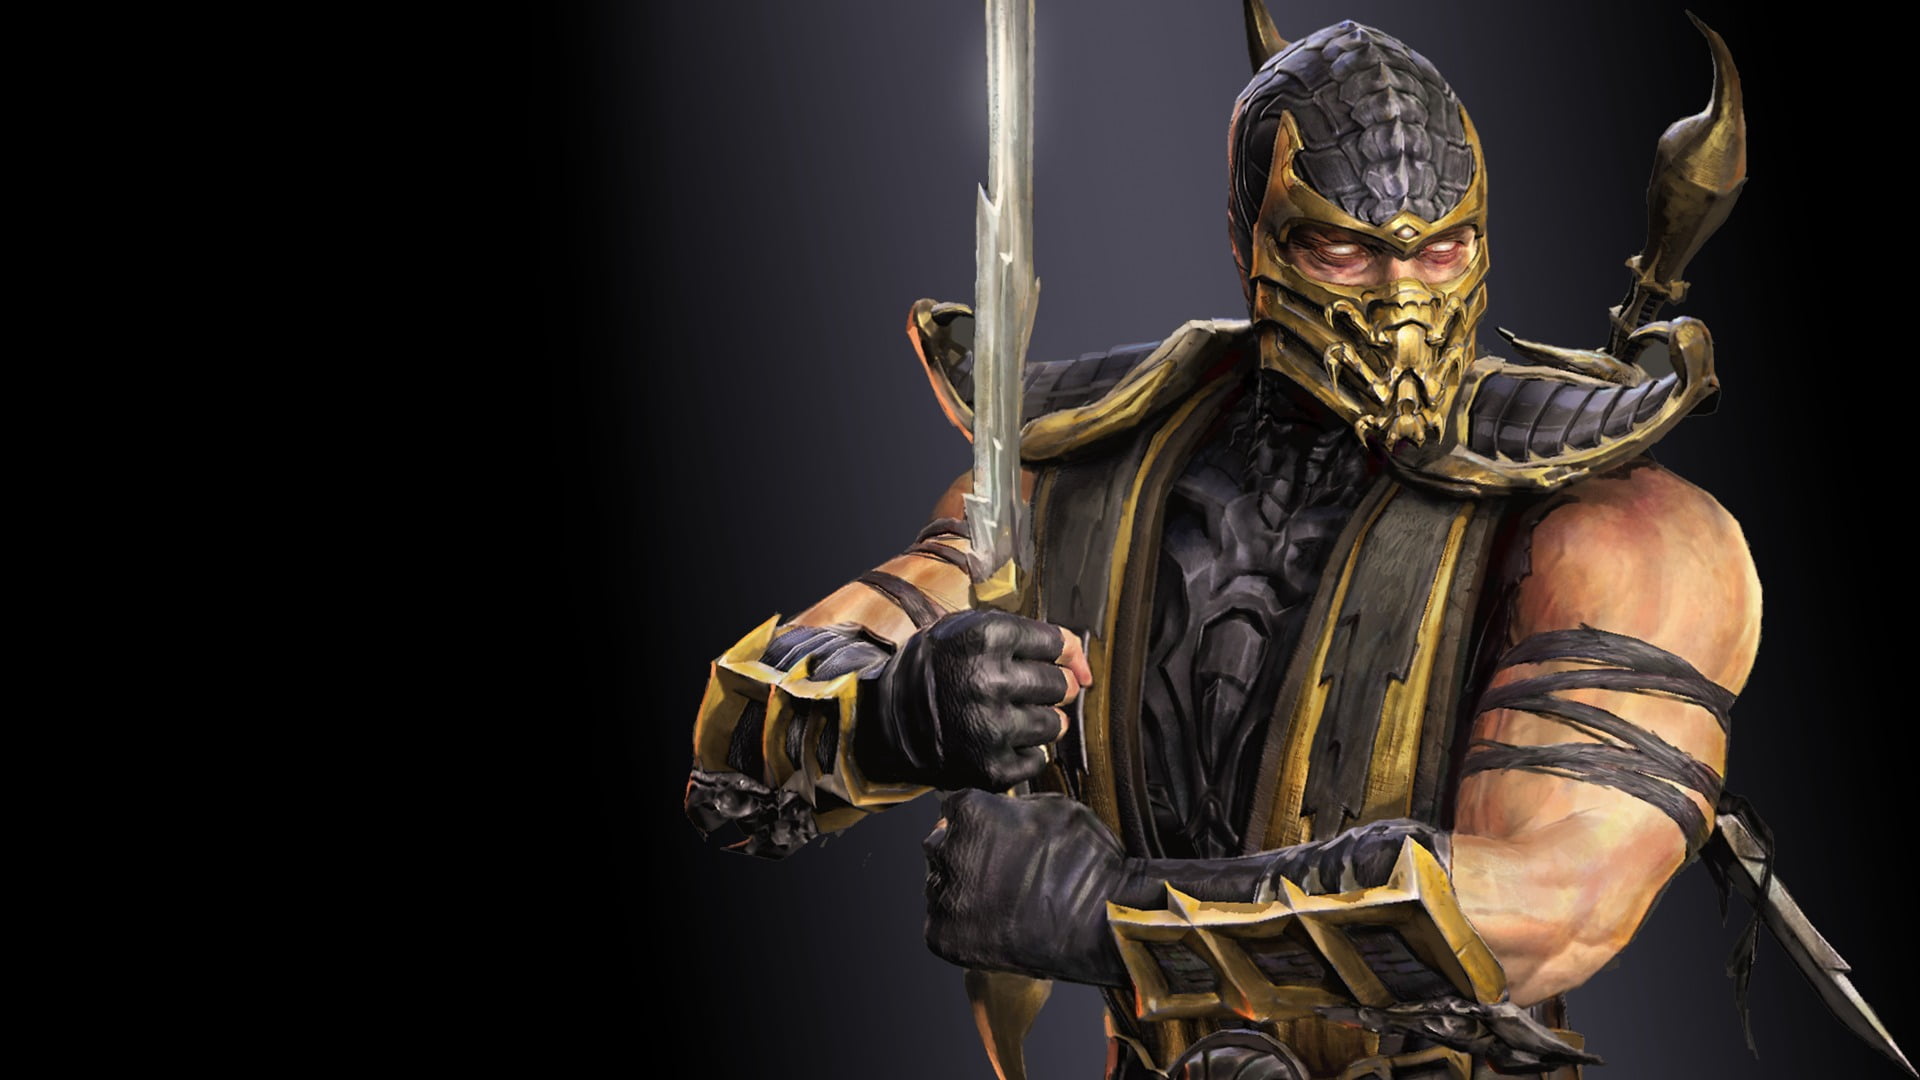 Mortal Kombat Scorpion illustration, warrior, ghost, ninja, weapon